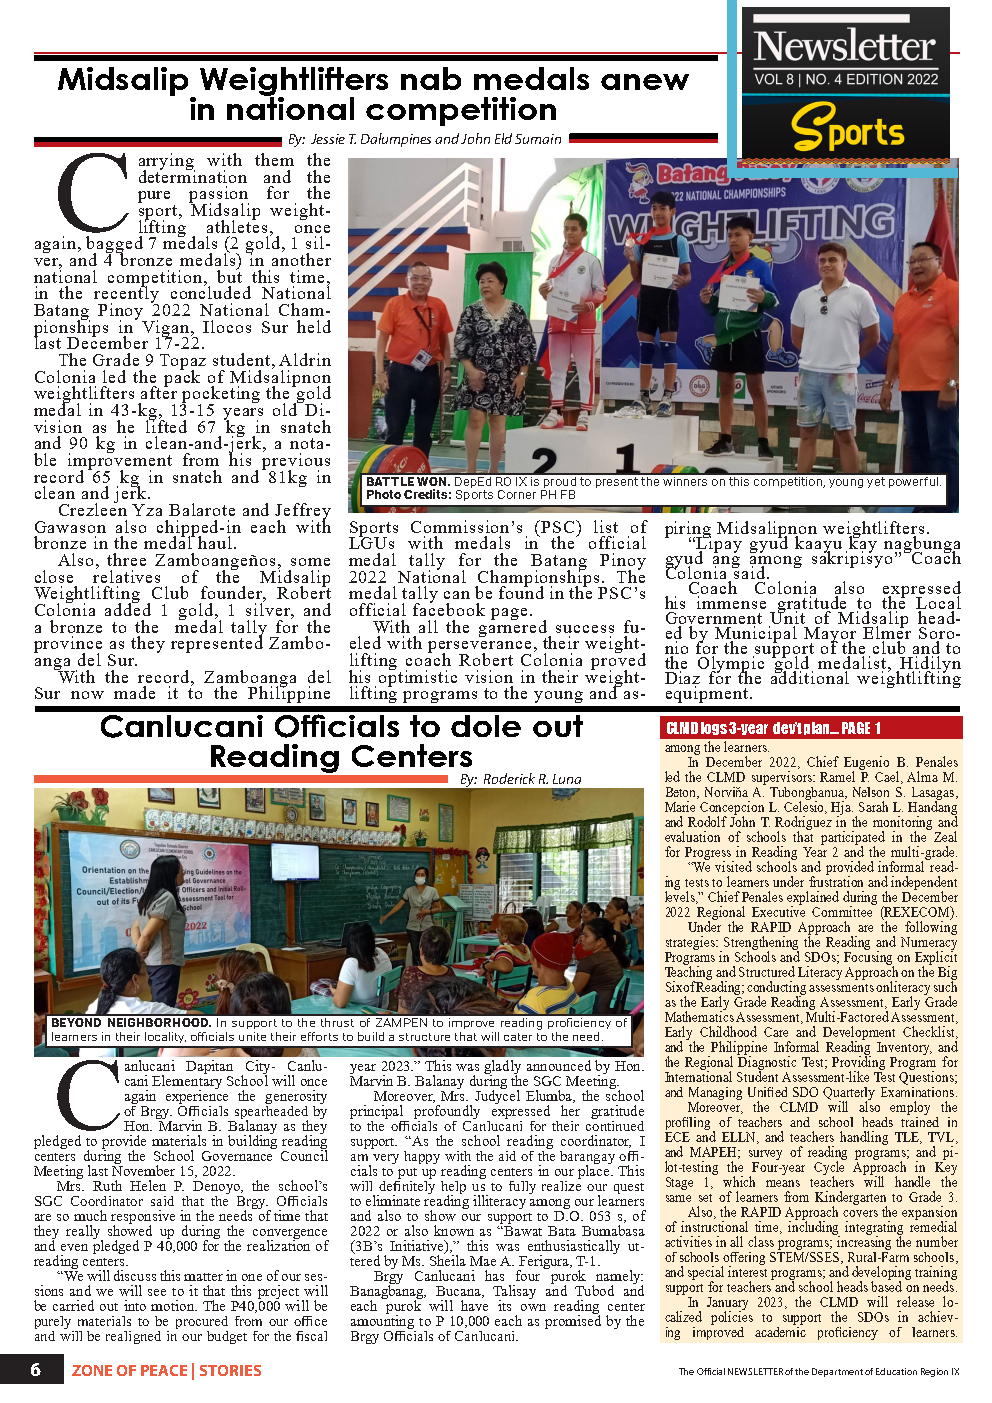 zone-of-peace-zamboanga-peninsula-newsletter-vol-8-no-4-edition-2022-page-6